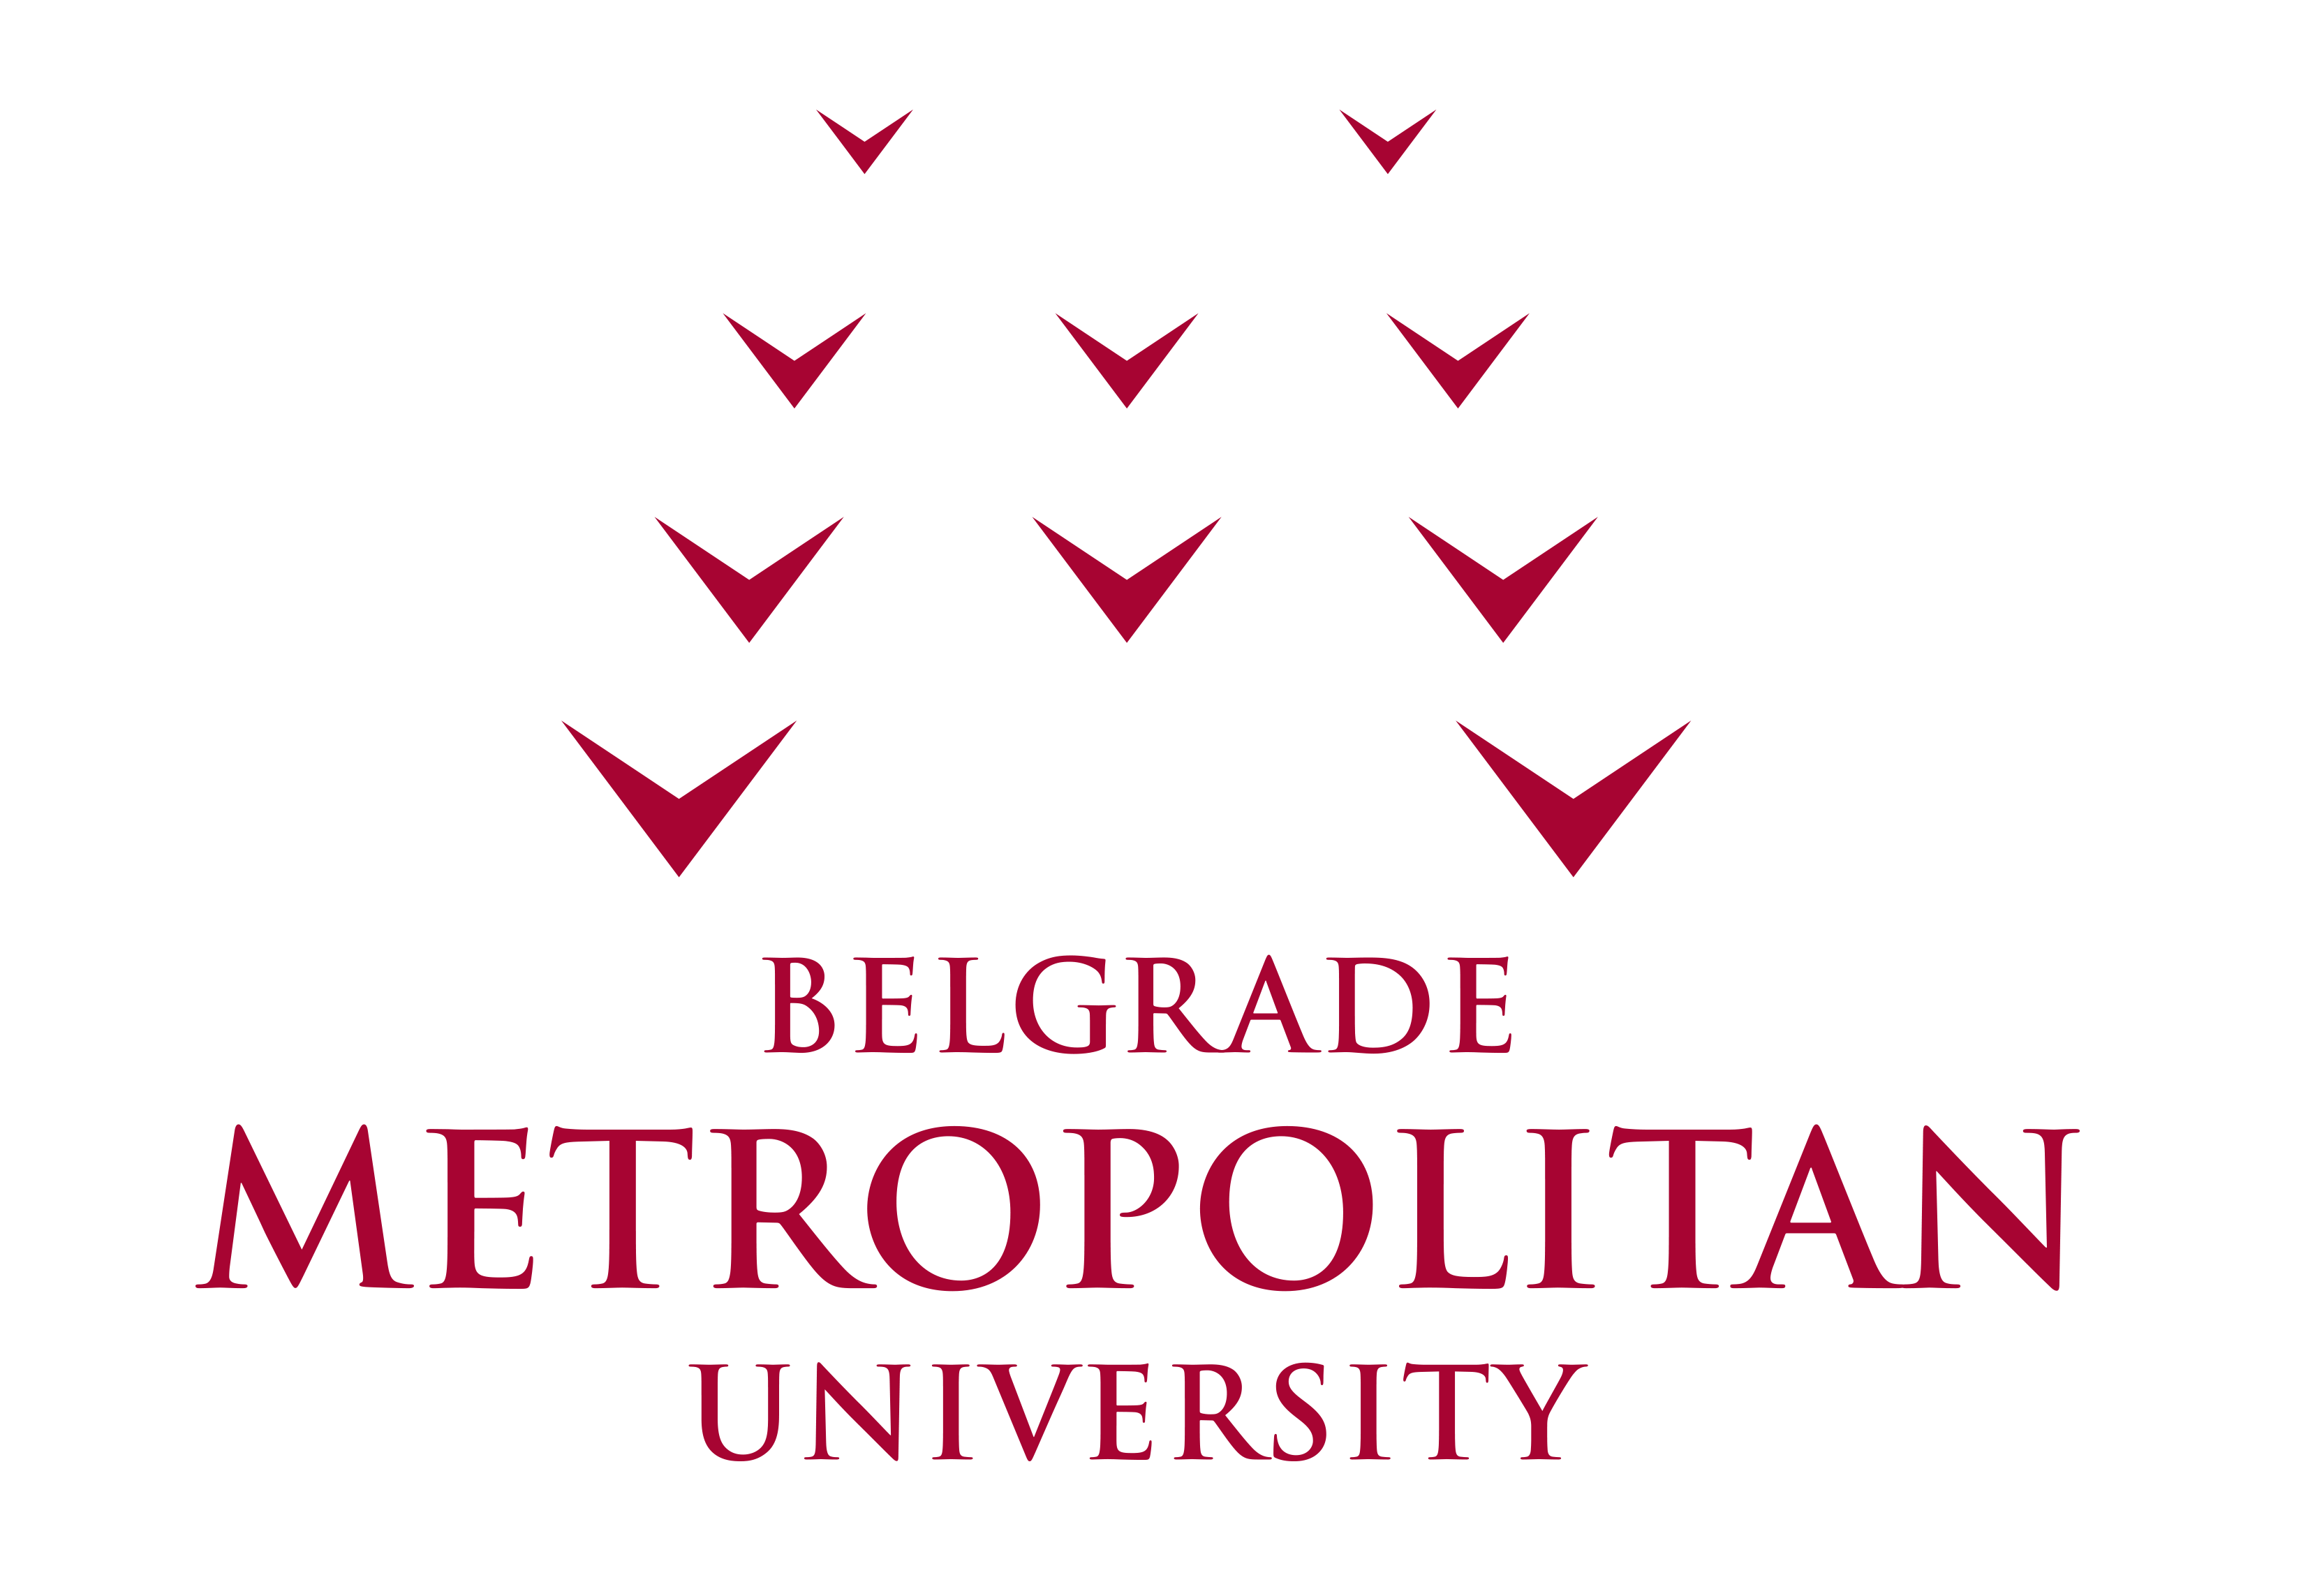 metropolitan logo